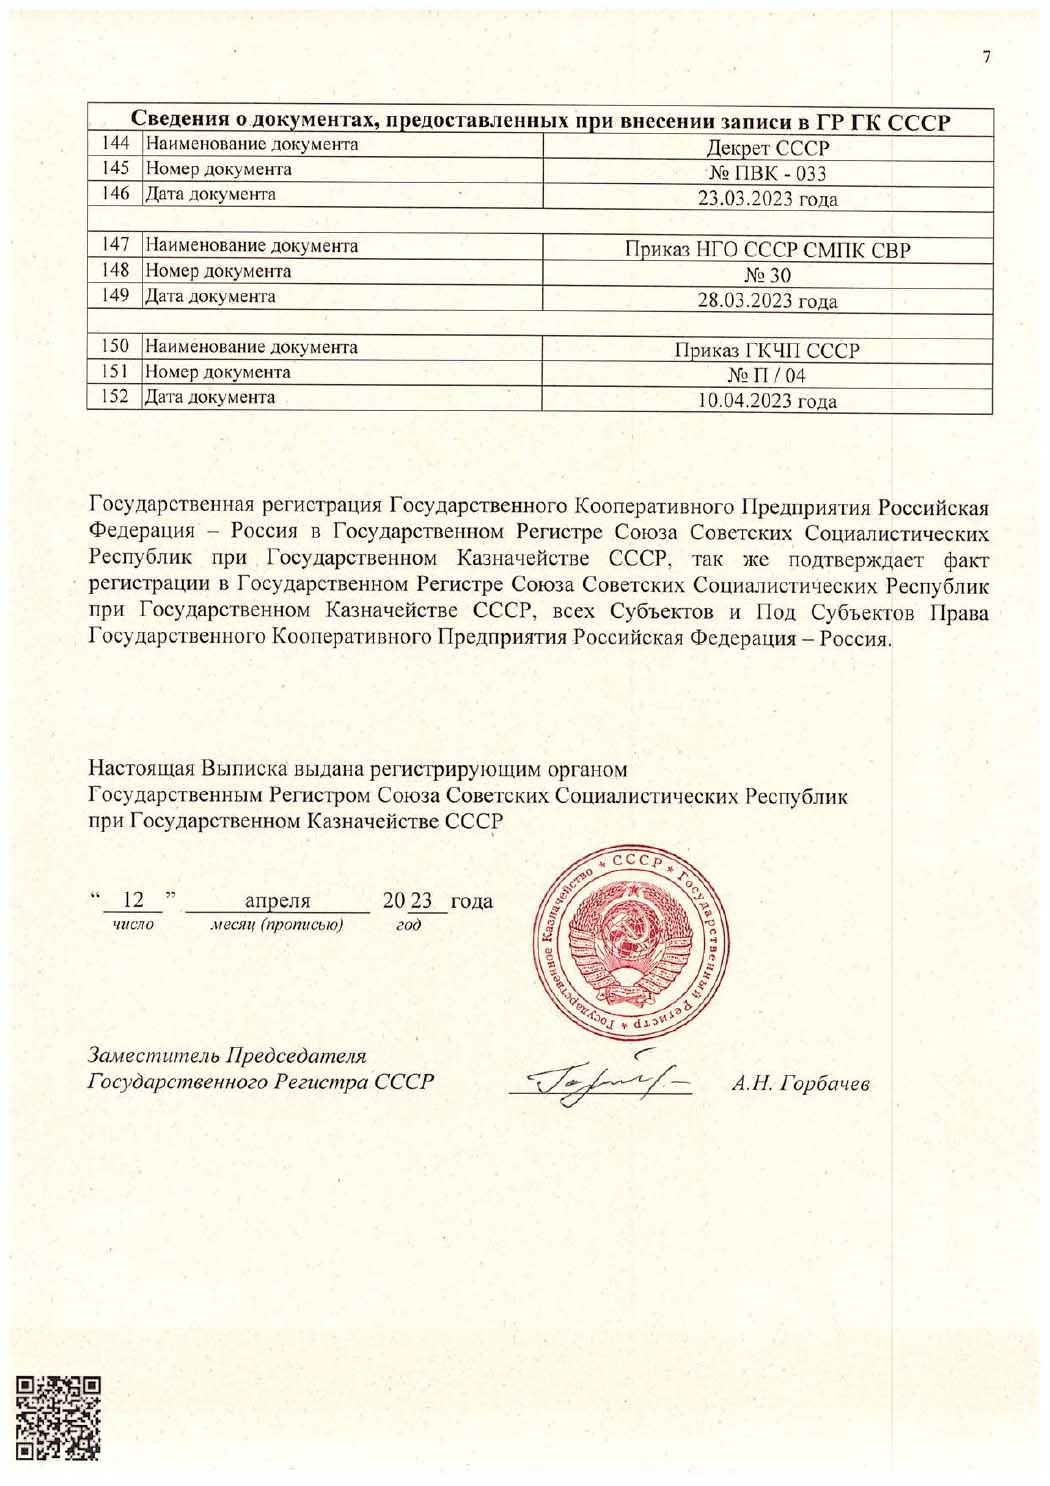 Выписка из Государственного реестра Государственного Регистра Союза Советских Социалистических Республик при Государственном Казначействе СССР